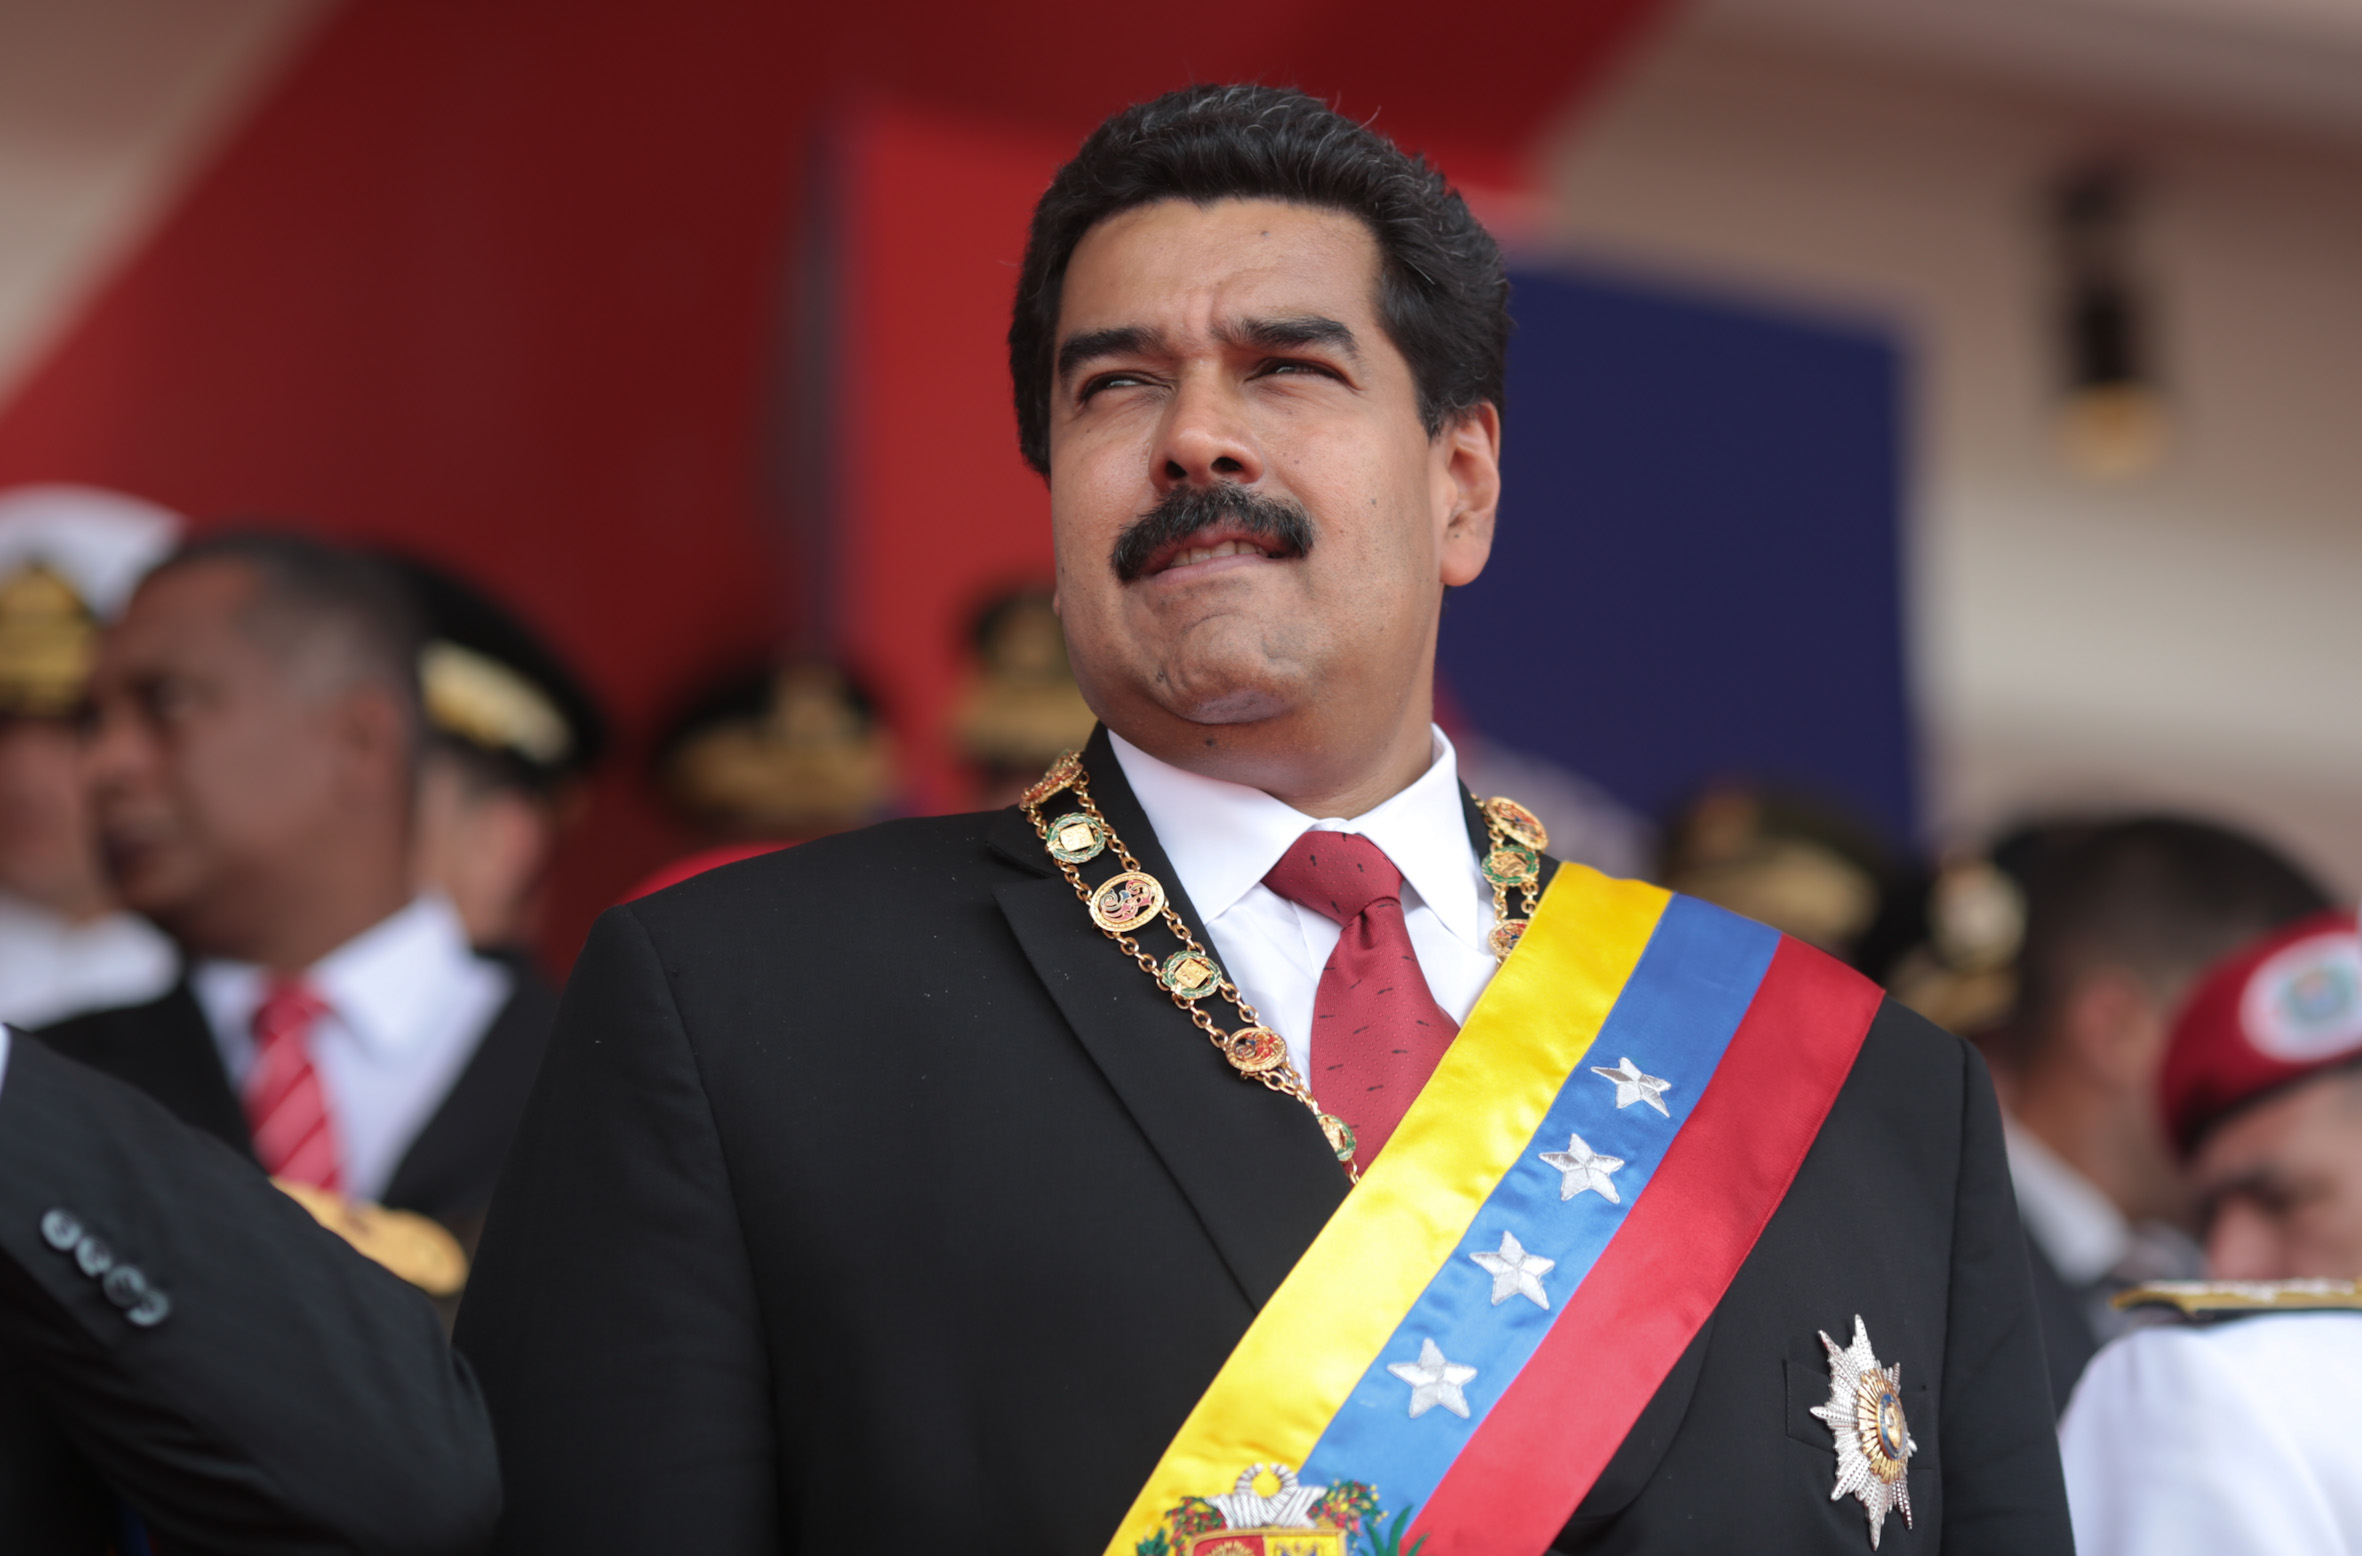 Οι ΗΠΑ στρέφονται στο Νίκολας Μαδούρο για να βρουν πετρέλαιο: Η Ουάσινγκτον νομιμοποιεί τον πρόεδρο της Βενεζουέλας